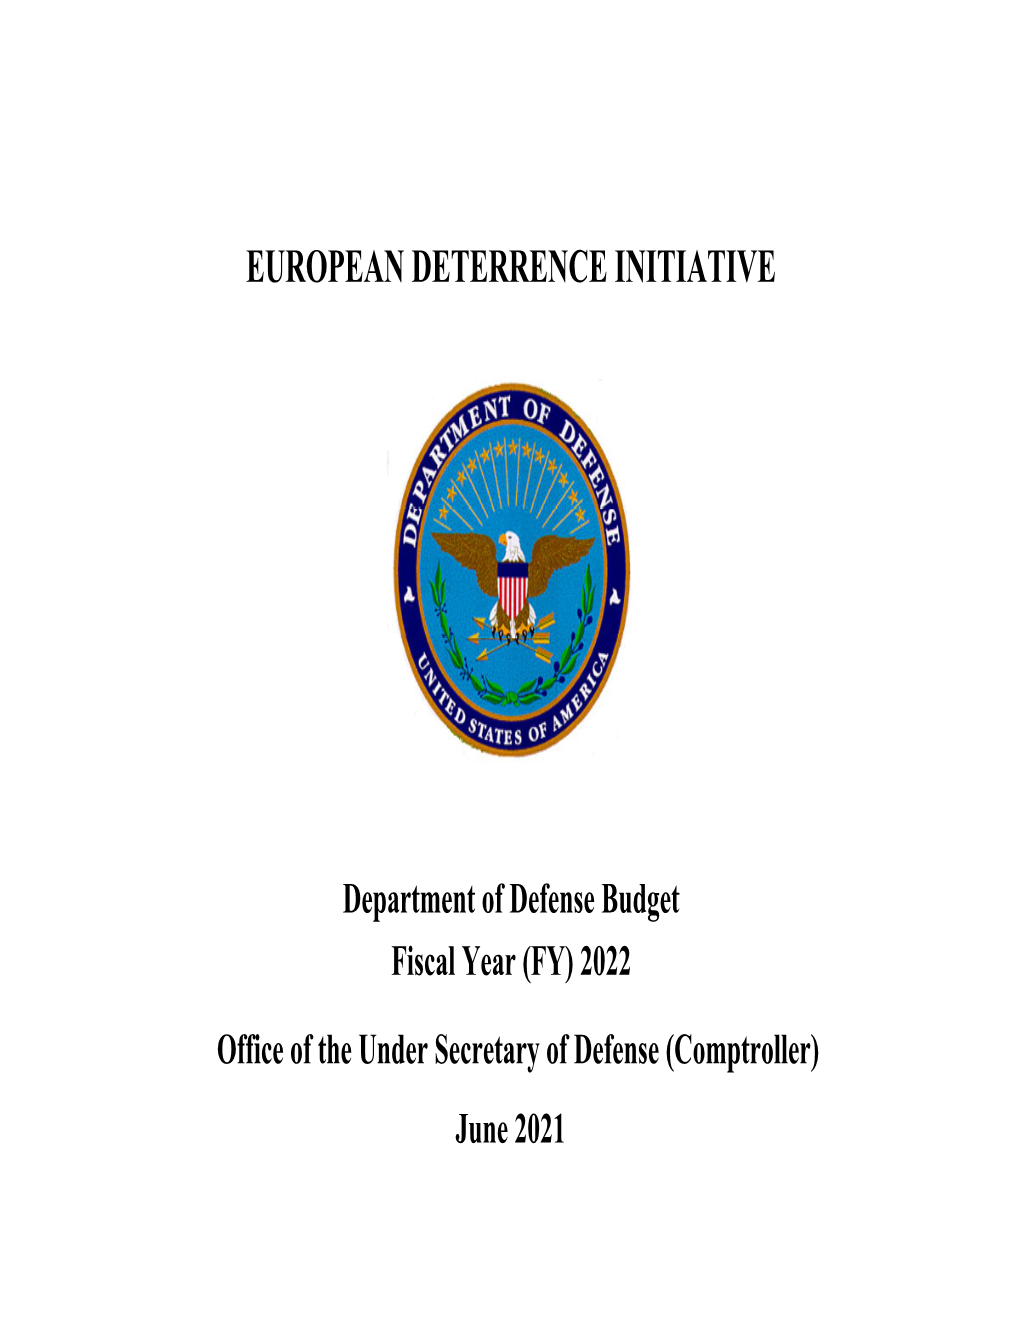 European Deterrence Initiative